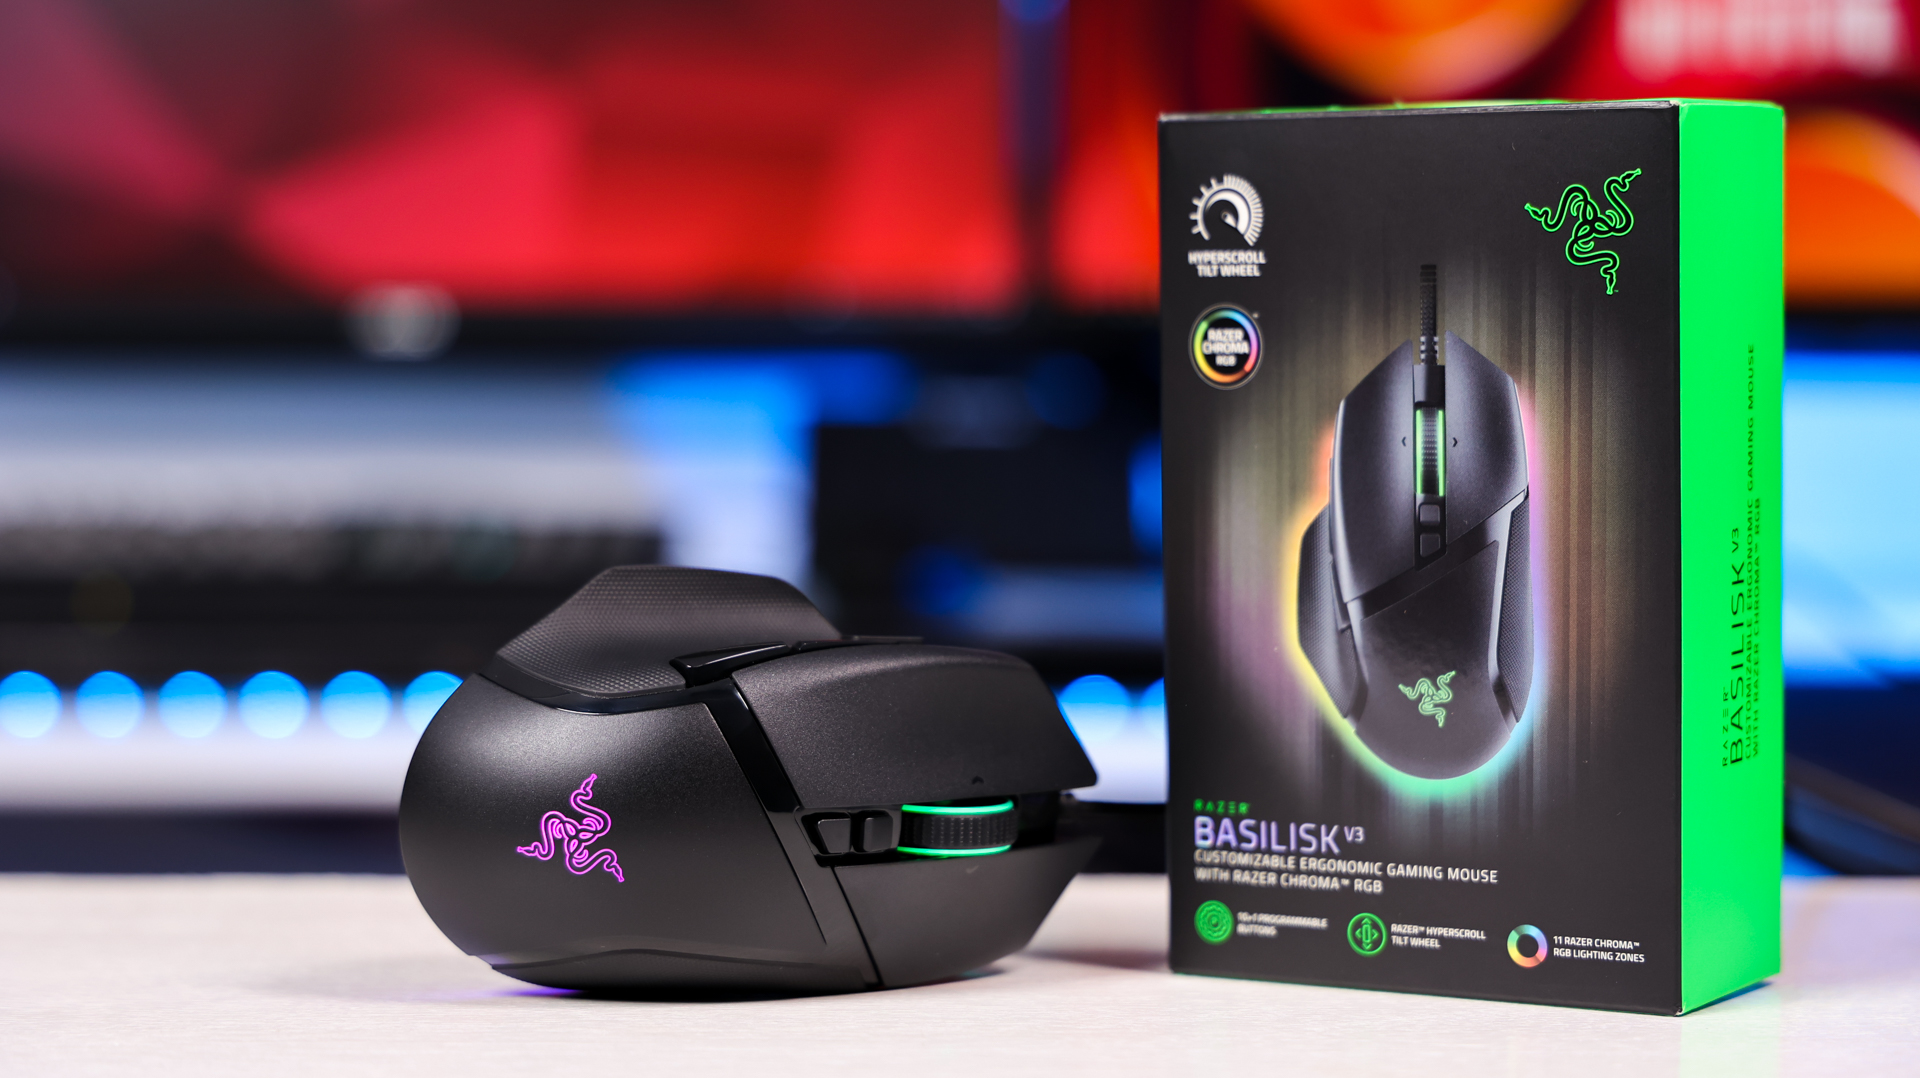 Customizable RGB Gaming Mouse - Razer Basilisk V3